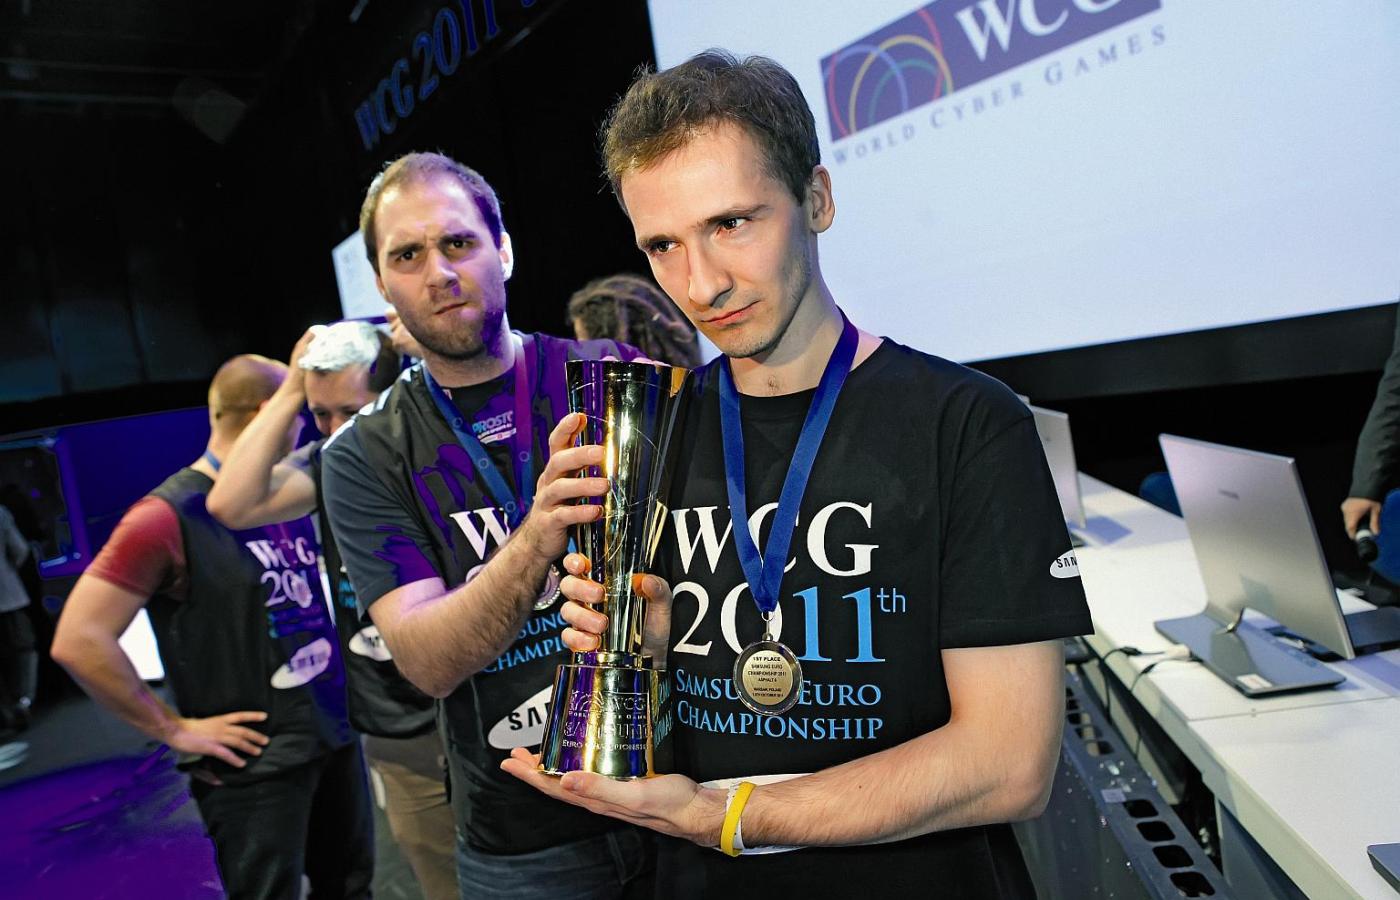 Mistrz World Cyber Games - Kamil Zalewski (po prawej) i złoty medalista w Counter-Strike - Wiktor Wojas z pucharem dla Polski.